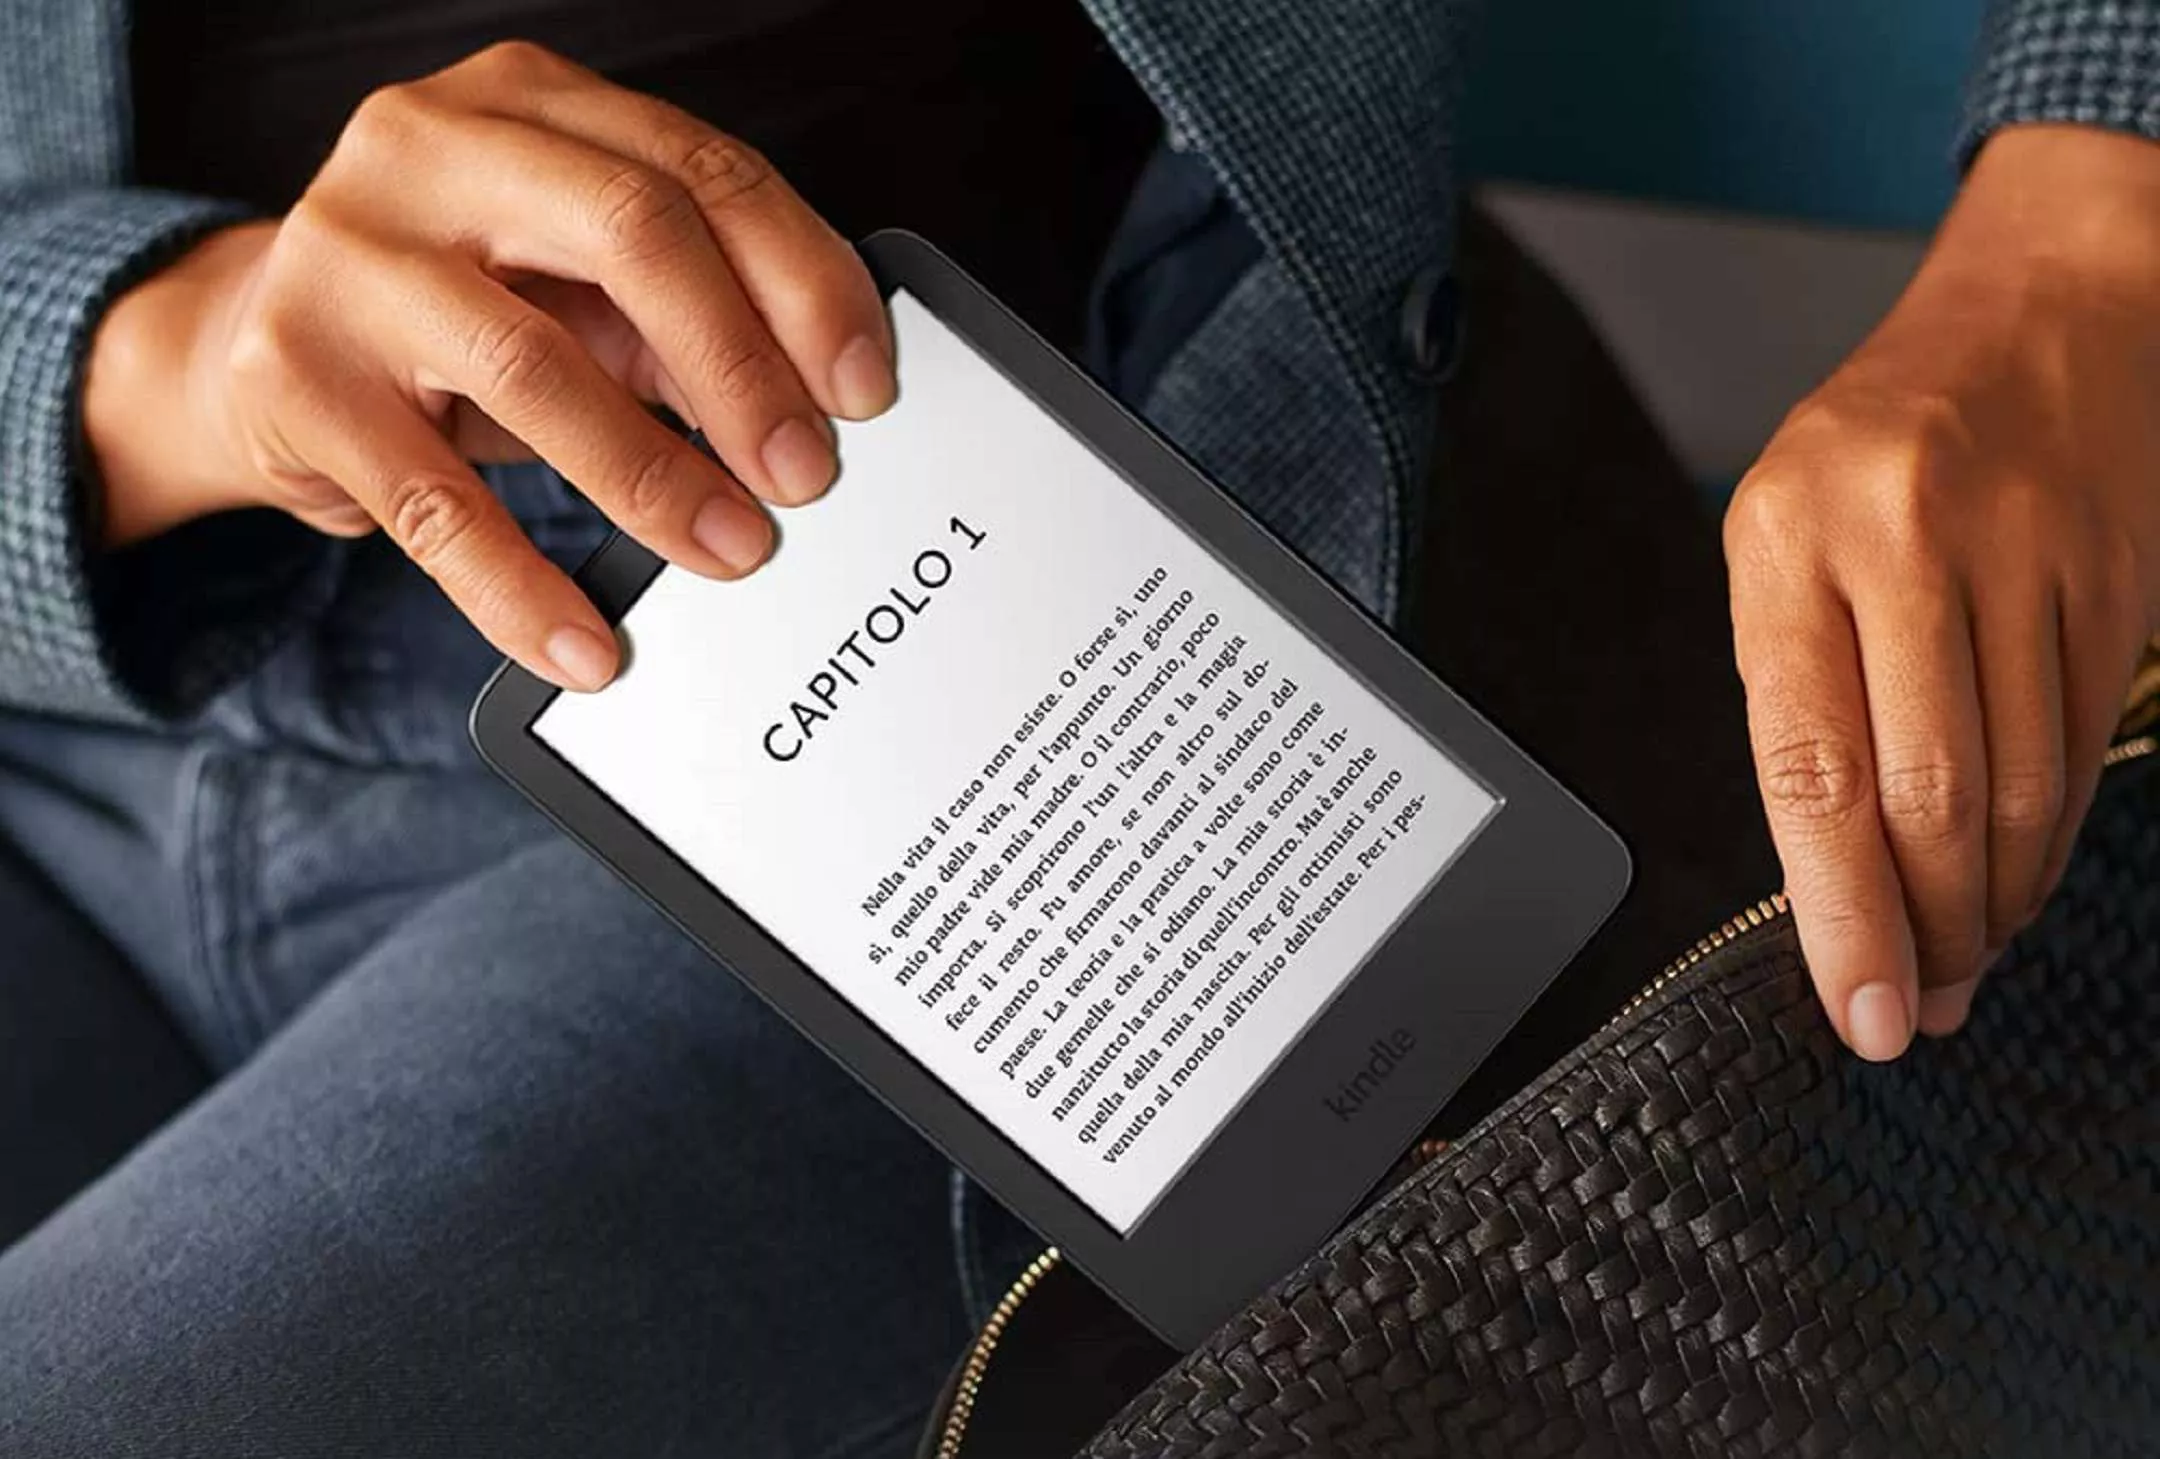 Promo  Kindle: e-reader in offerta al miglior prezzo con